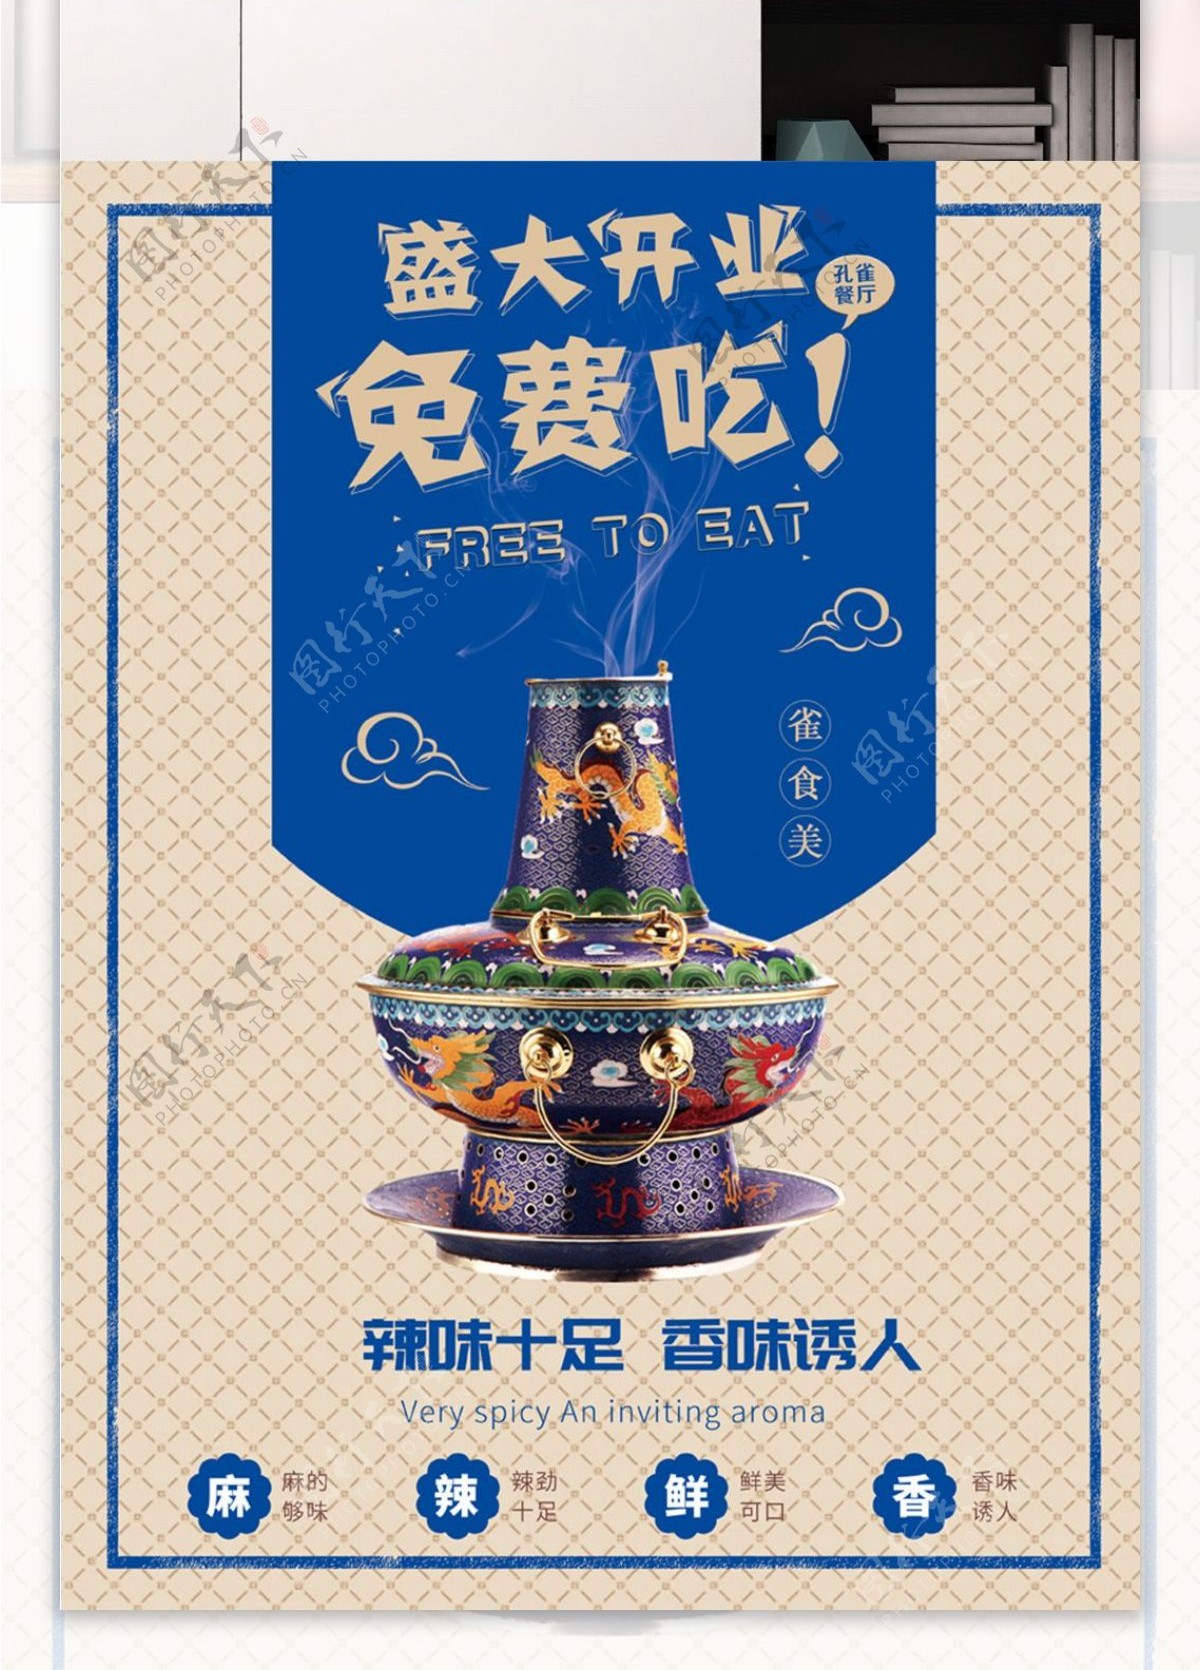 中国风火锅美食宣传海报